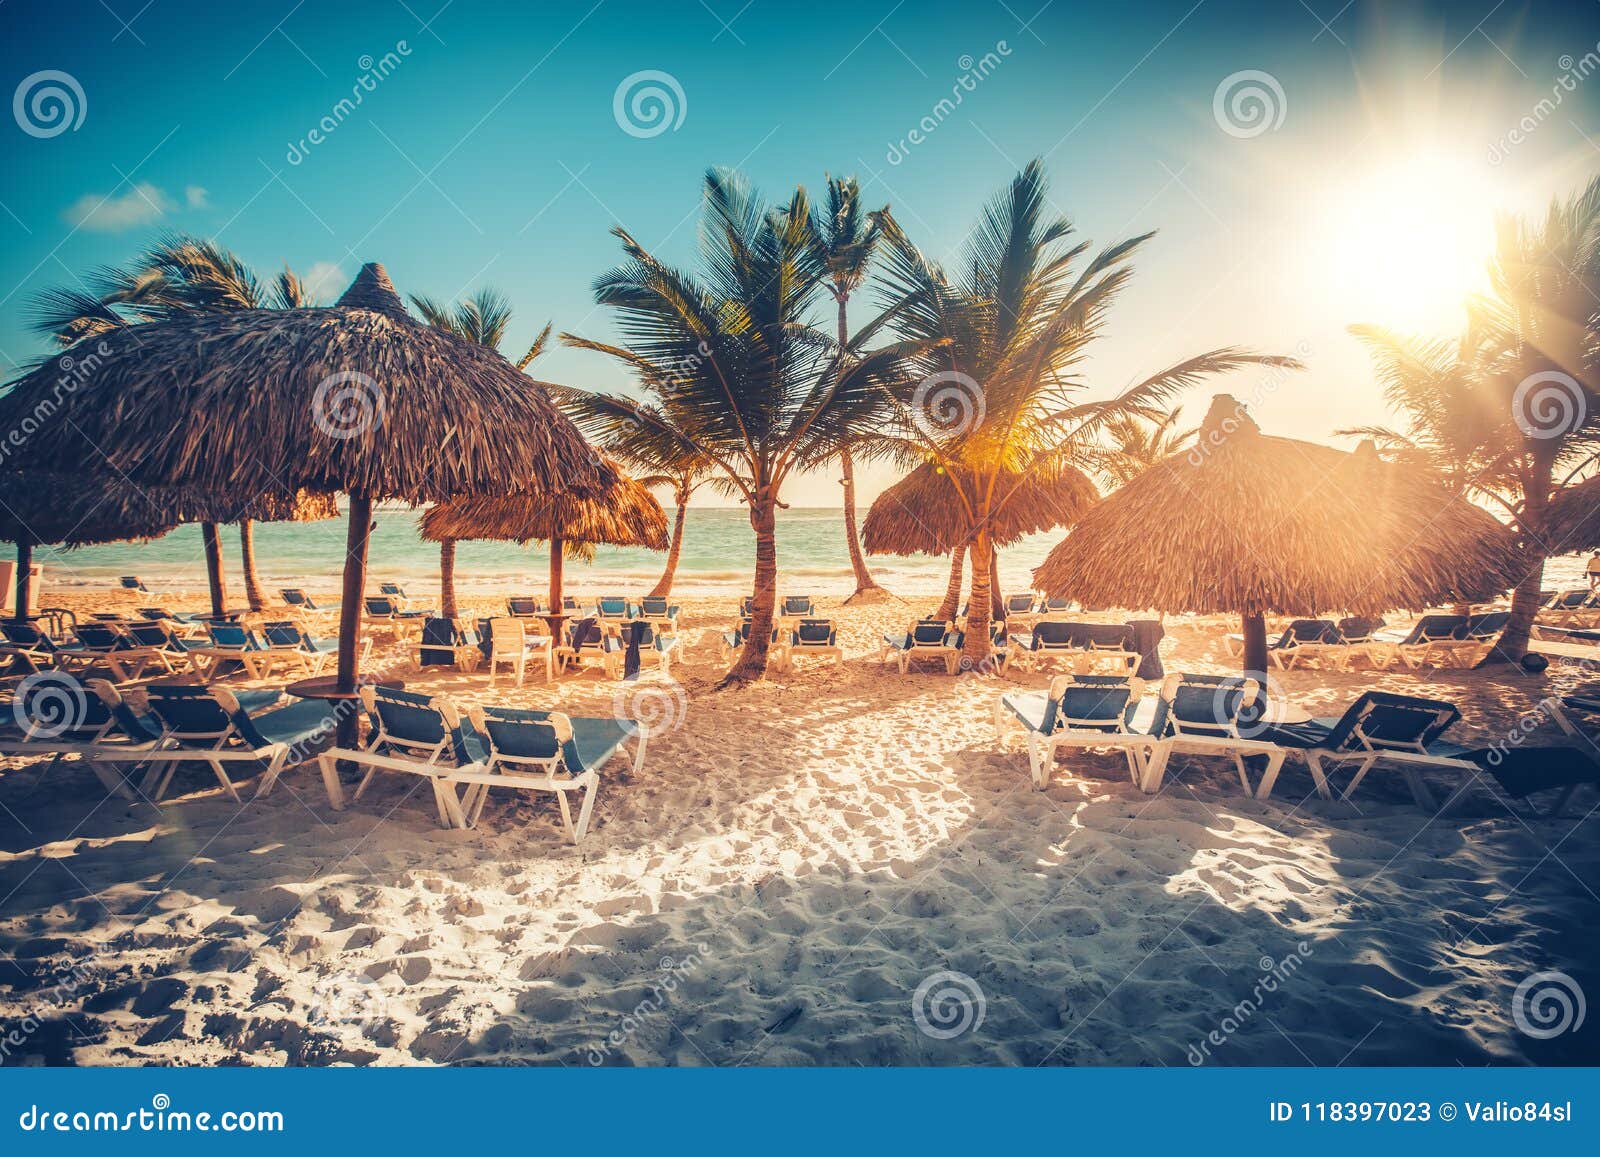 tropical beach resort in punta cana, dominican republic